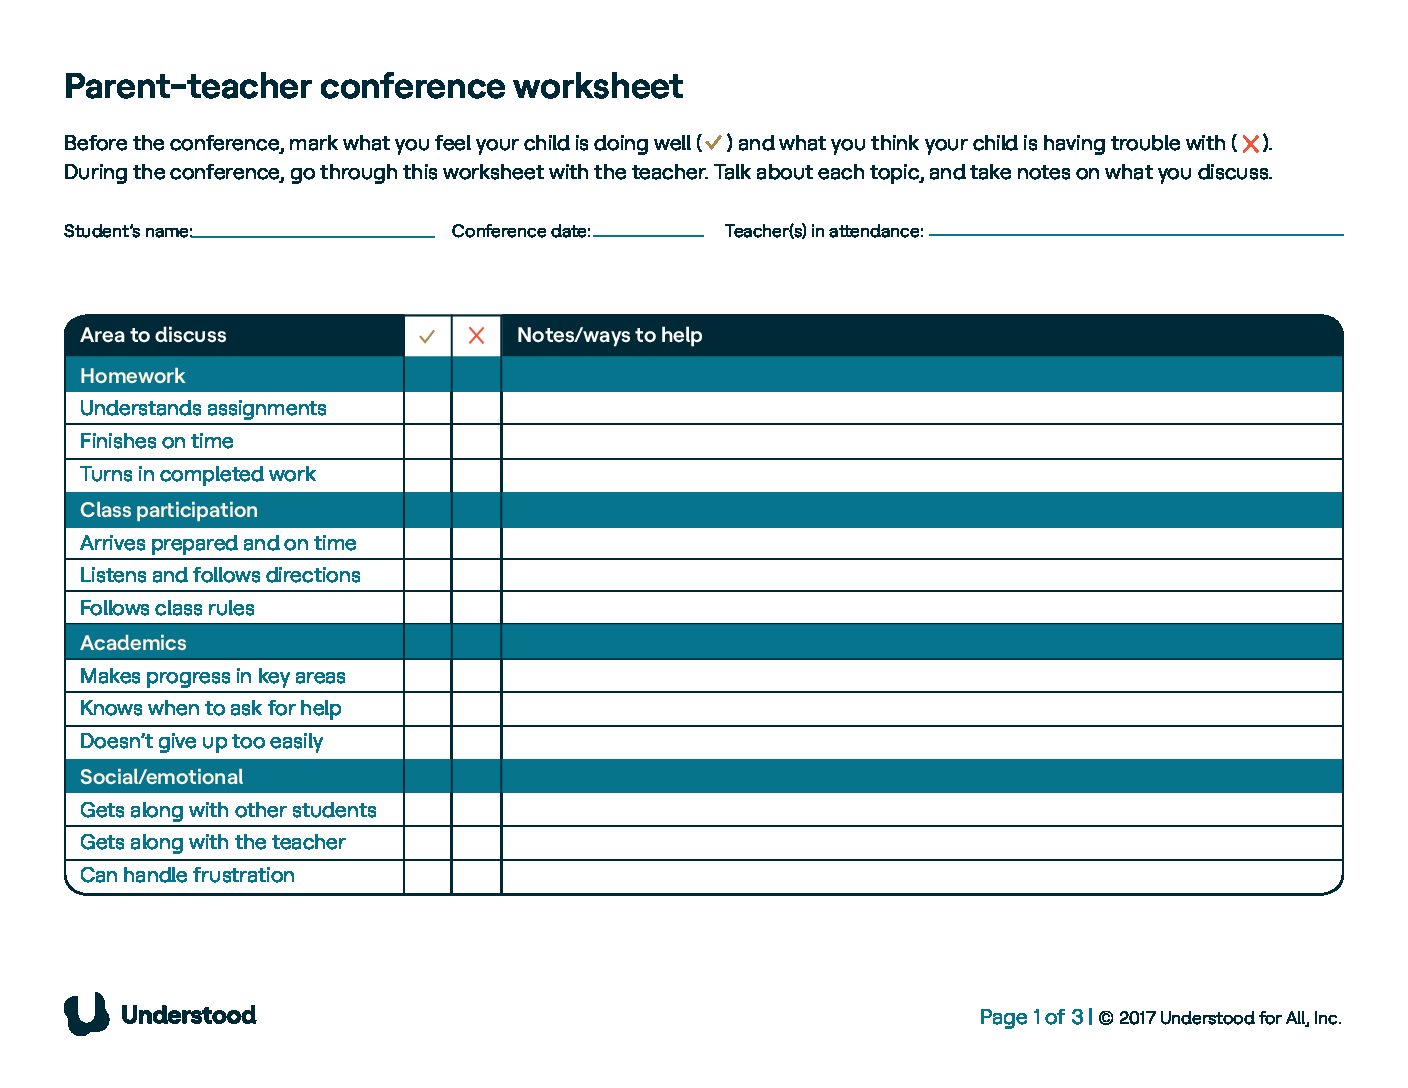 Parent-Teacher_Conference_Worksheet_Understood